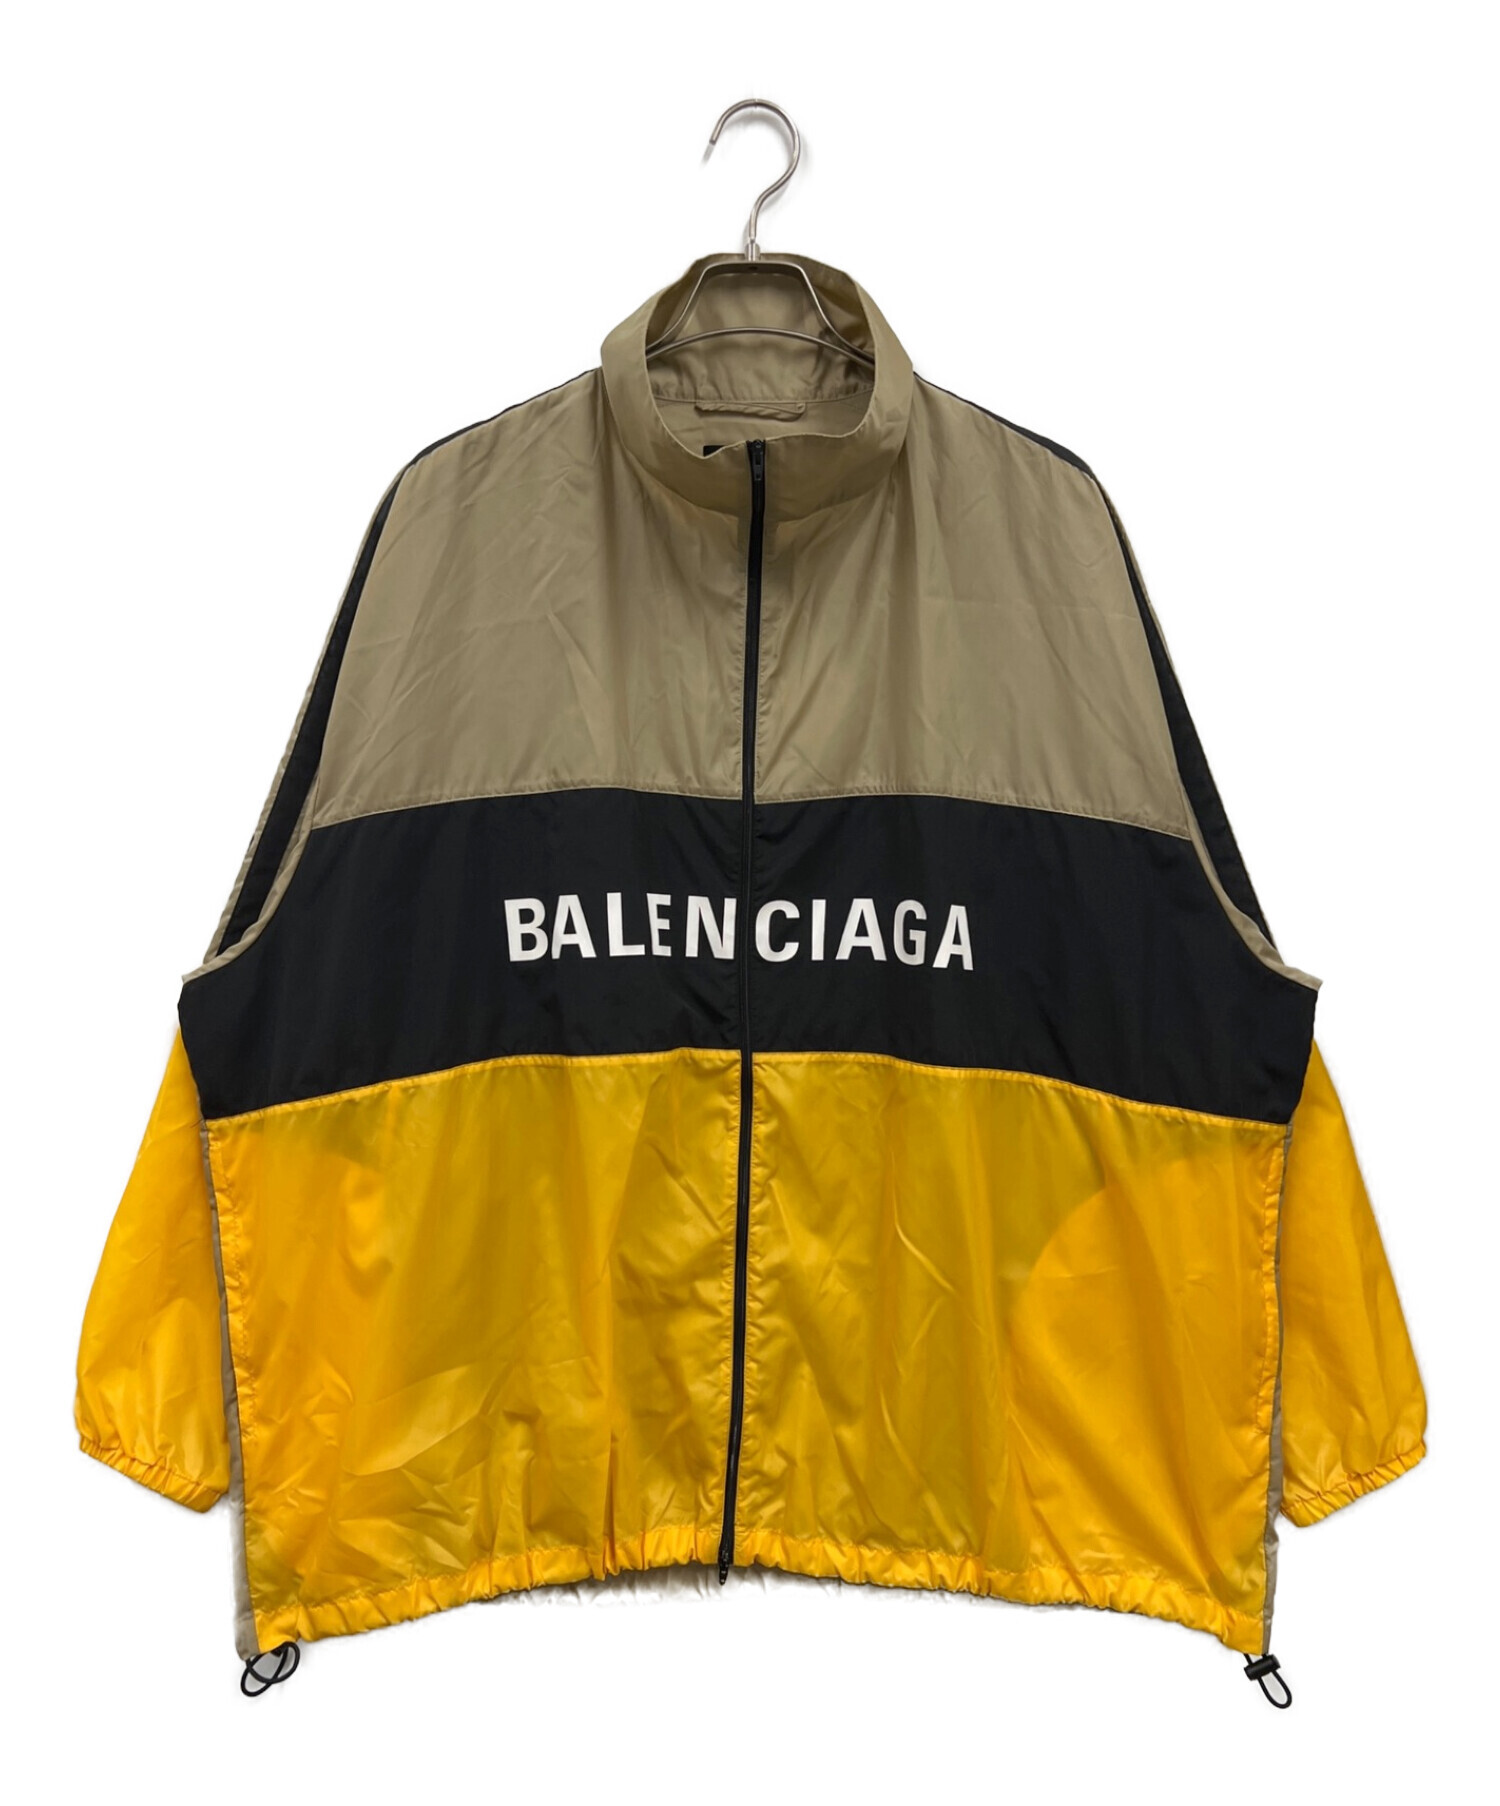 BALENCIAGA (バレンシアガ) ナイロントラックジャケット イエロー×ブラック サイズ:46